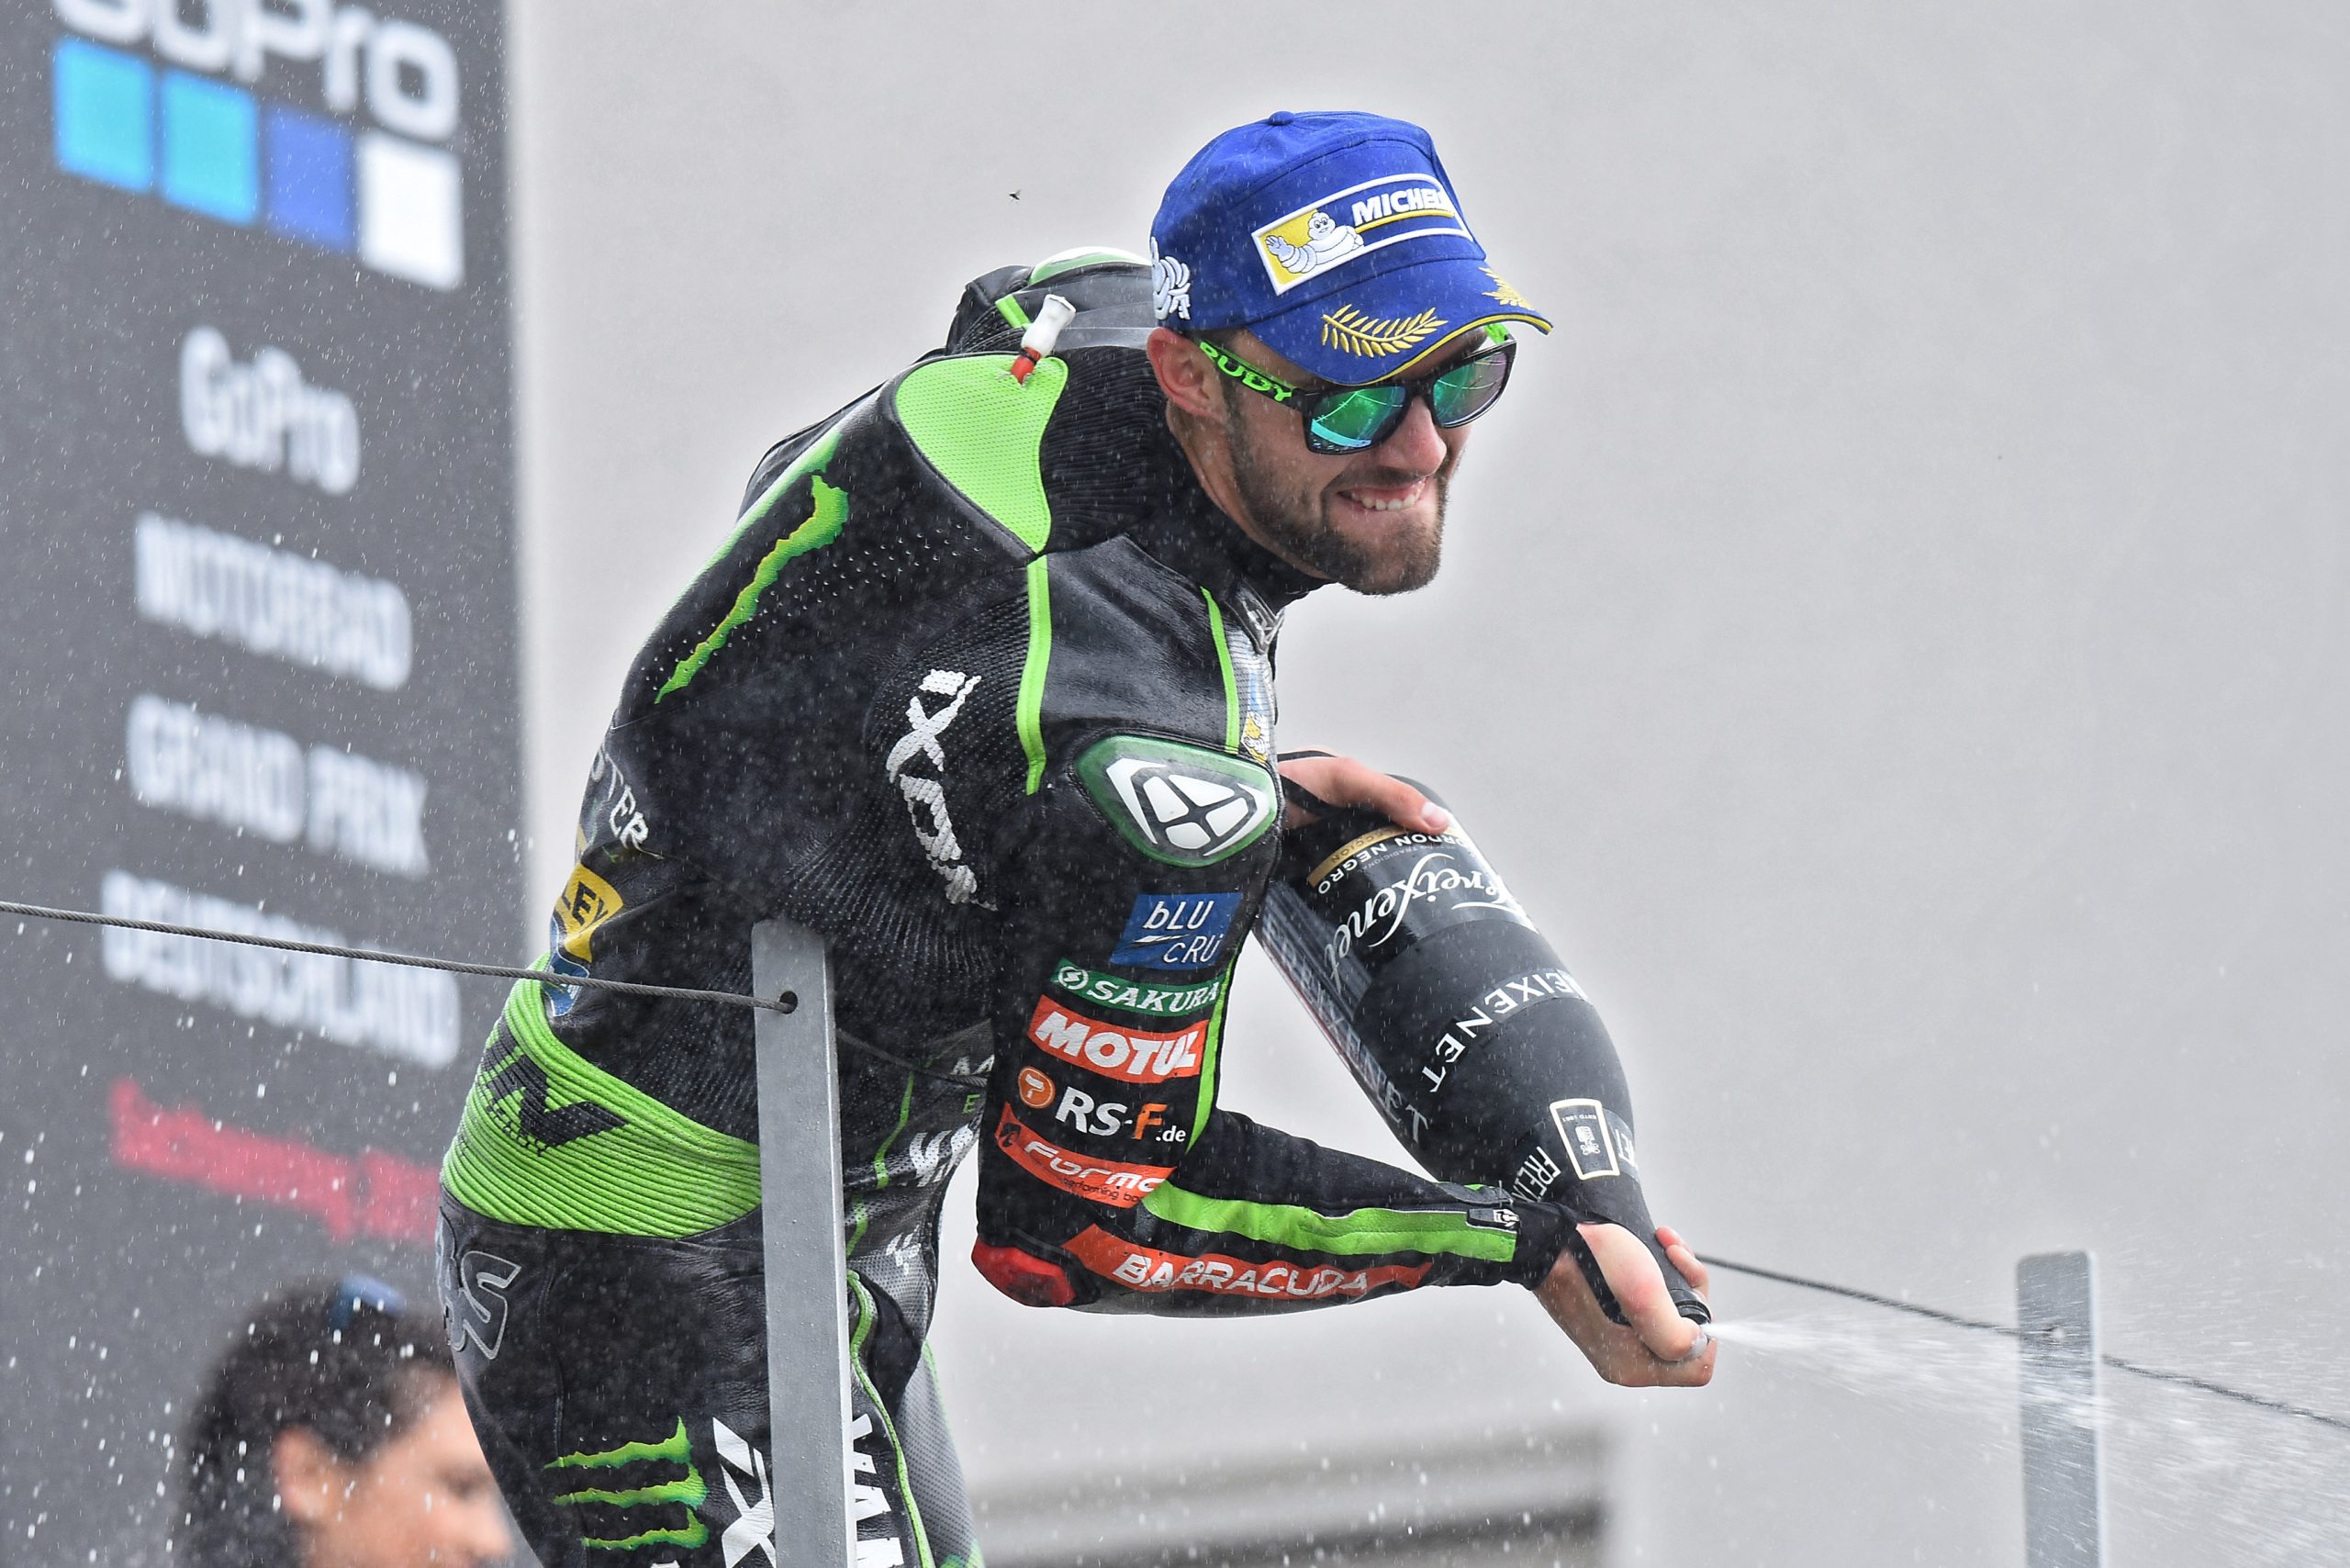 Jonas Folger po raz pierwszy na podium w MotoGP – GP Niemiec 2017